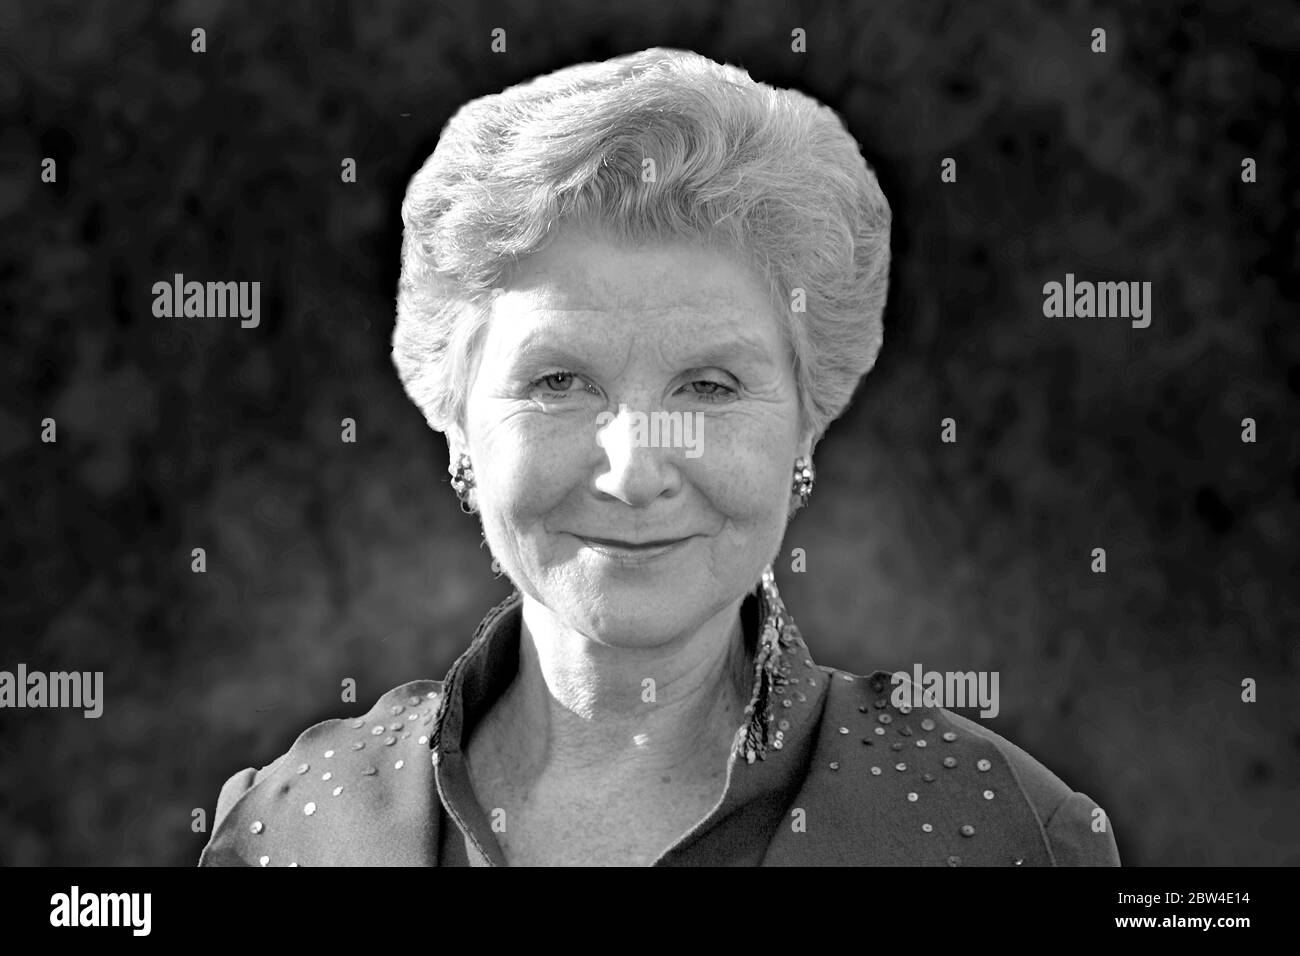 Berlin, Deutschland. Mai 2020. FOTOMONTAGE: Schauspielerin IRM HERMANN starb im Alter von 77 Jahren. Archivfoto; IRM HERMANN, Deutschland, Schauspielerin, Porträt, Hochformat, 06/18/2004. Kredit: dpa/Alamy Live News Stockfoto